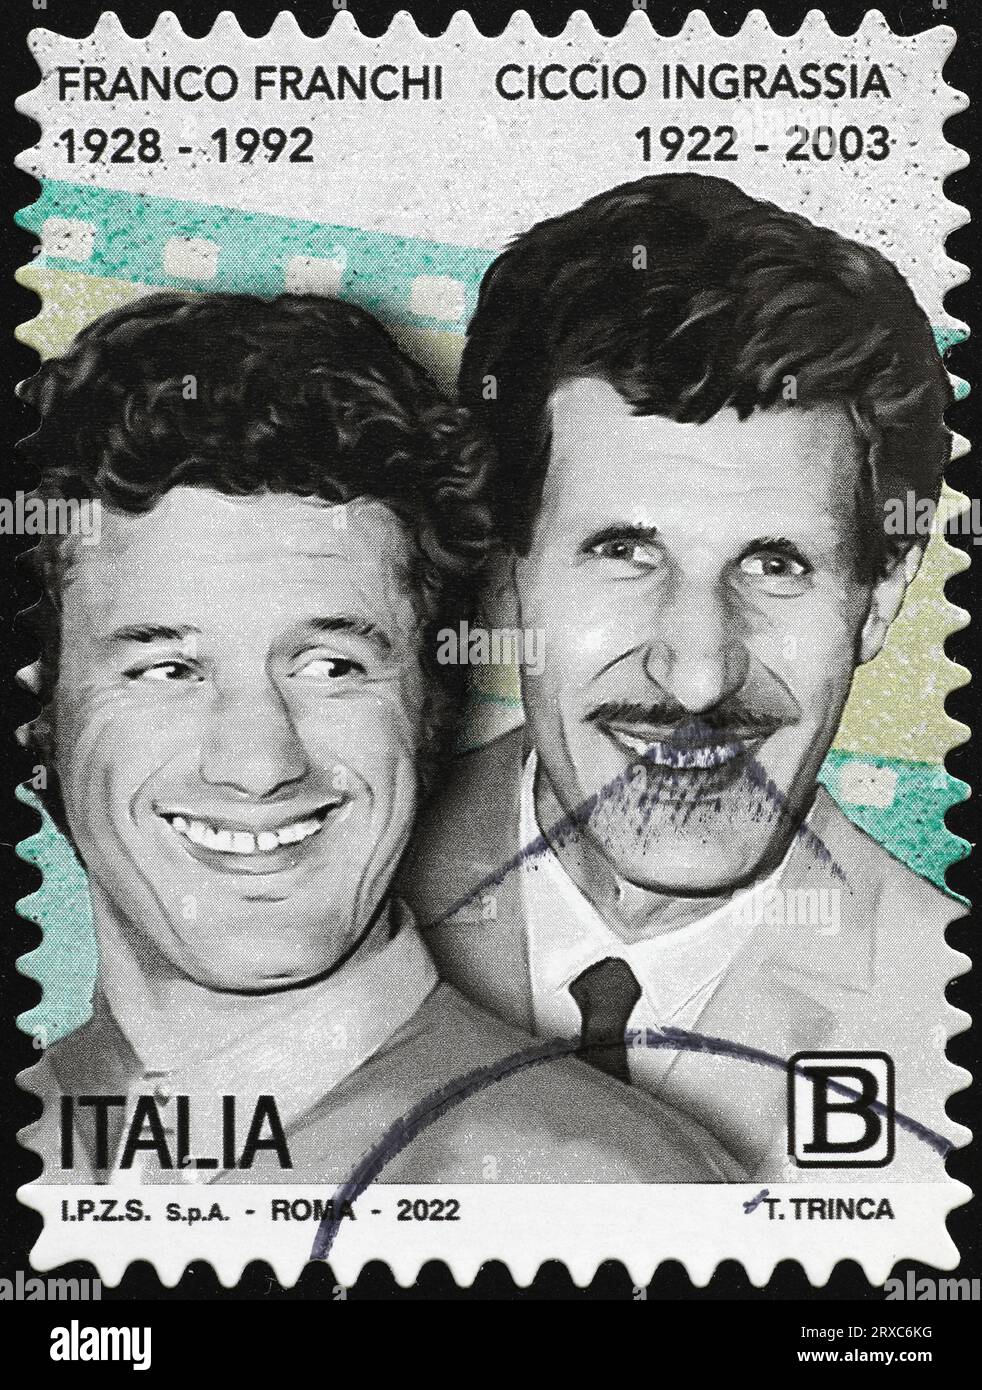 Franco Franchi y Ciccio Ingrassia en el sello italiano Foto de stock